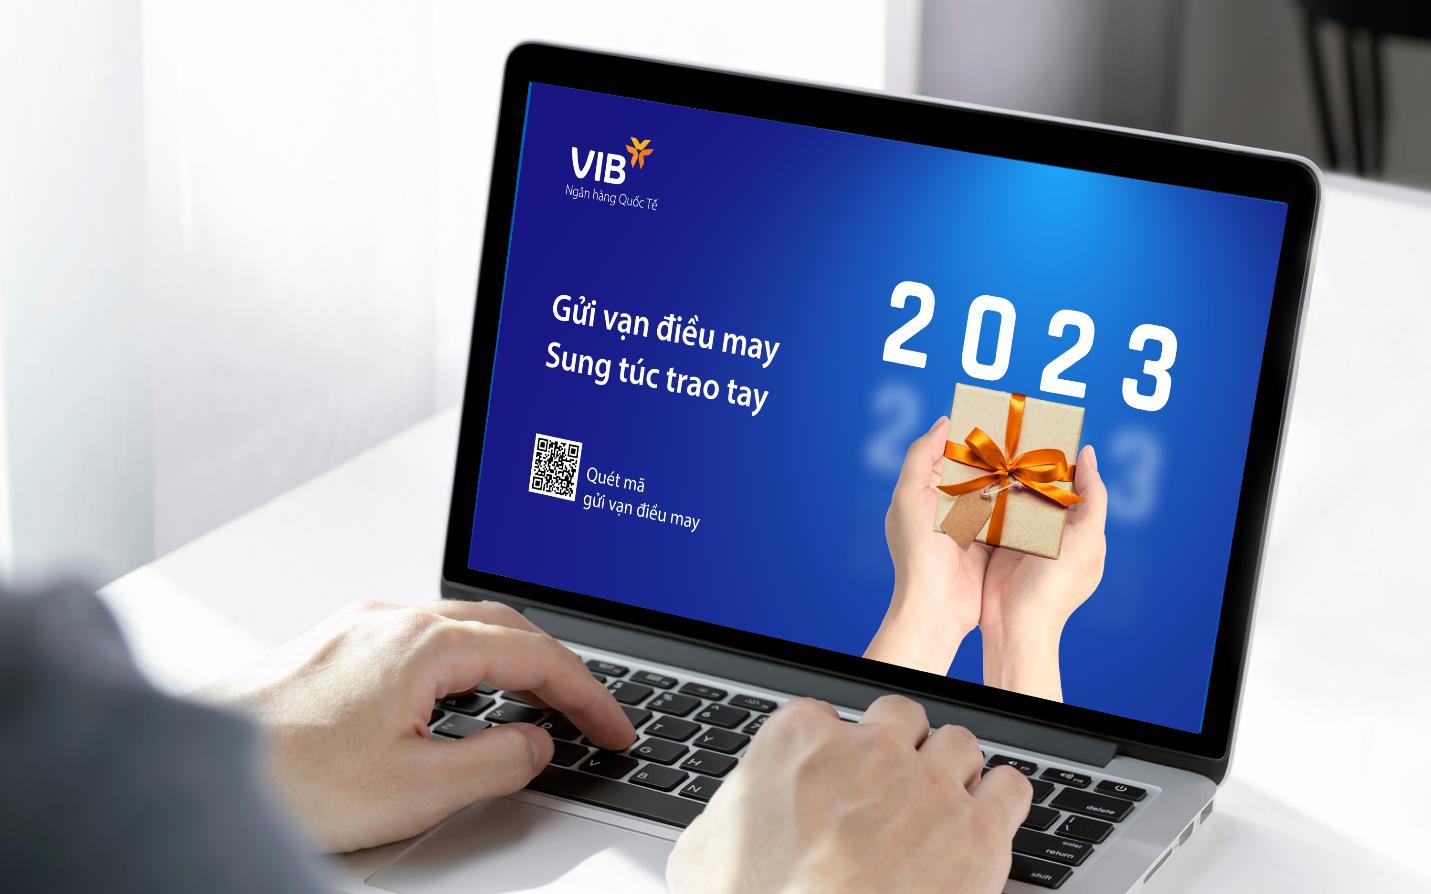 Nhận ngay hàng ngàn giải thưởng tiền mặt khi giao dịch tại VIB trong dịp Tết 2023 - Ảnh 1.